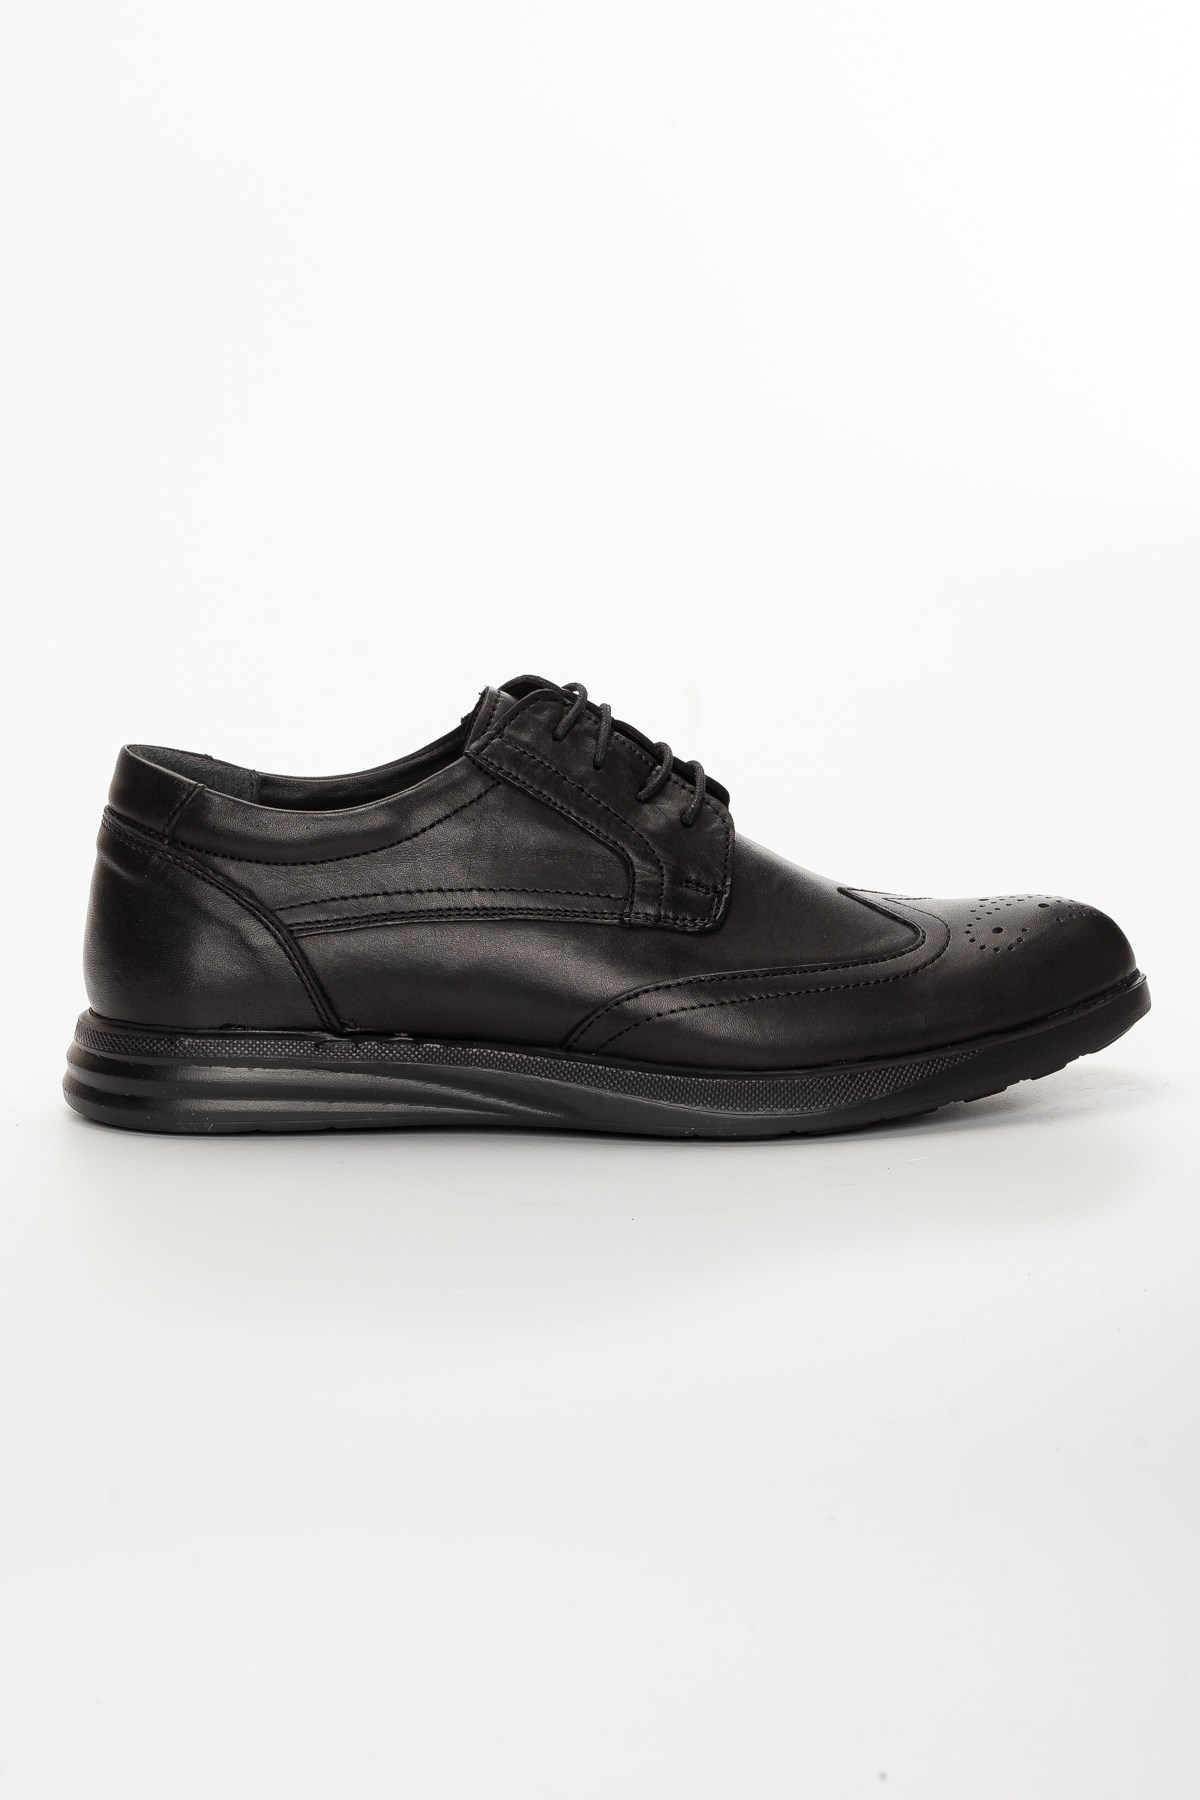 Düz taban Bağcıklı Siyah Erkek Klasik Ayakkabı